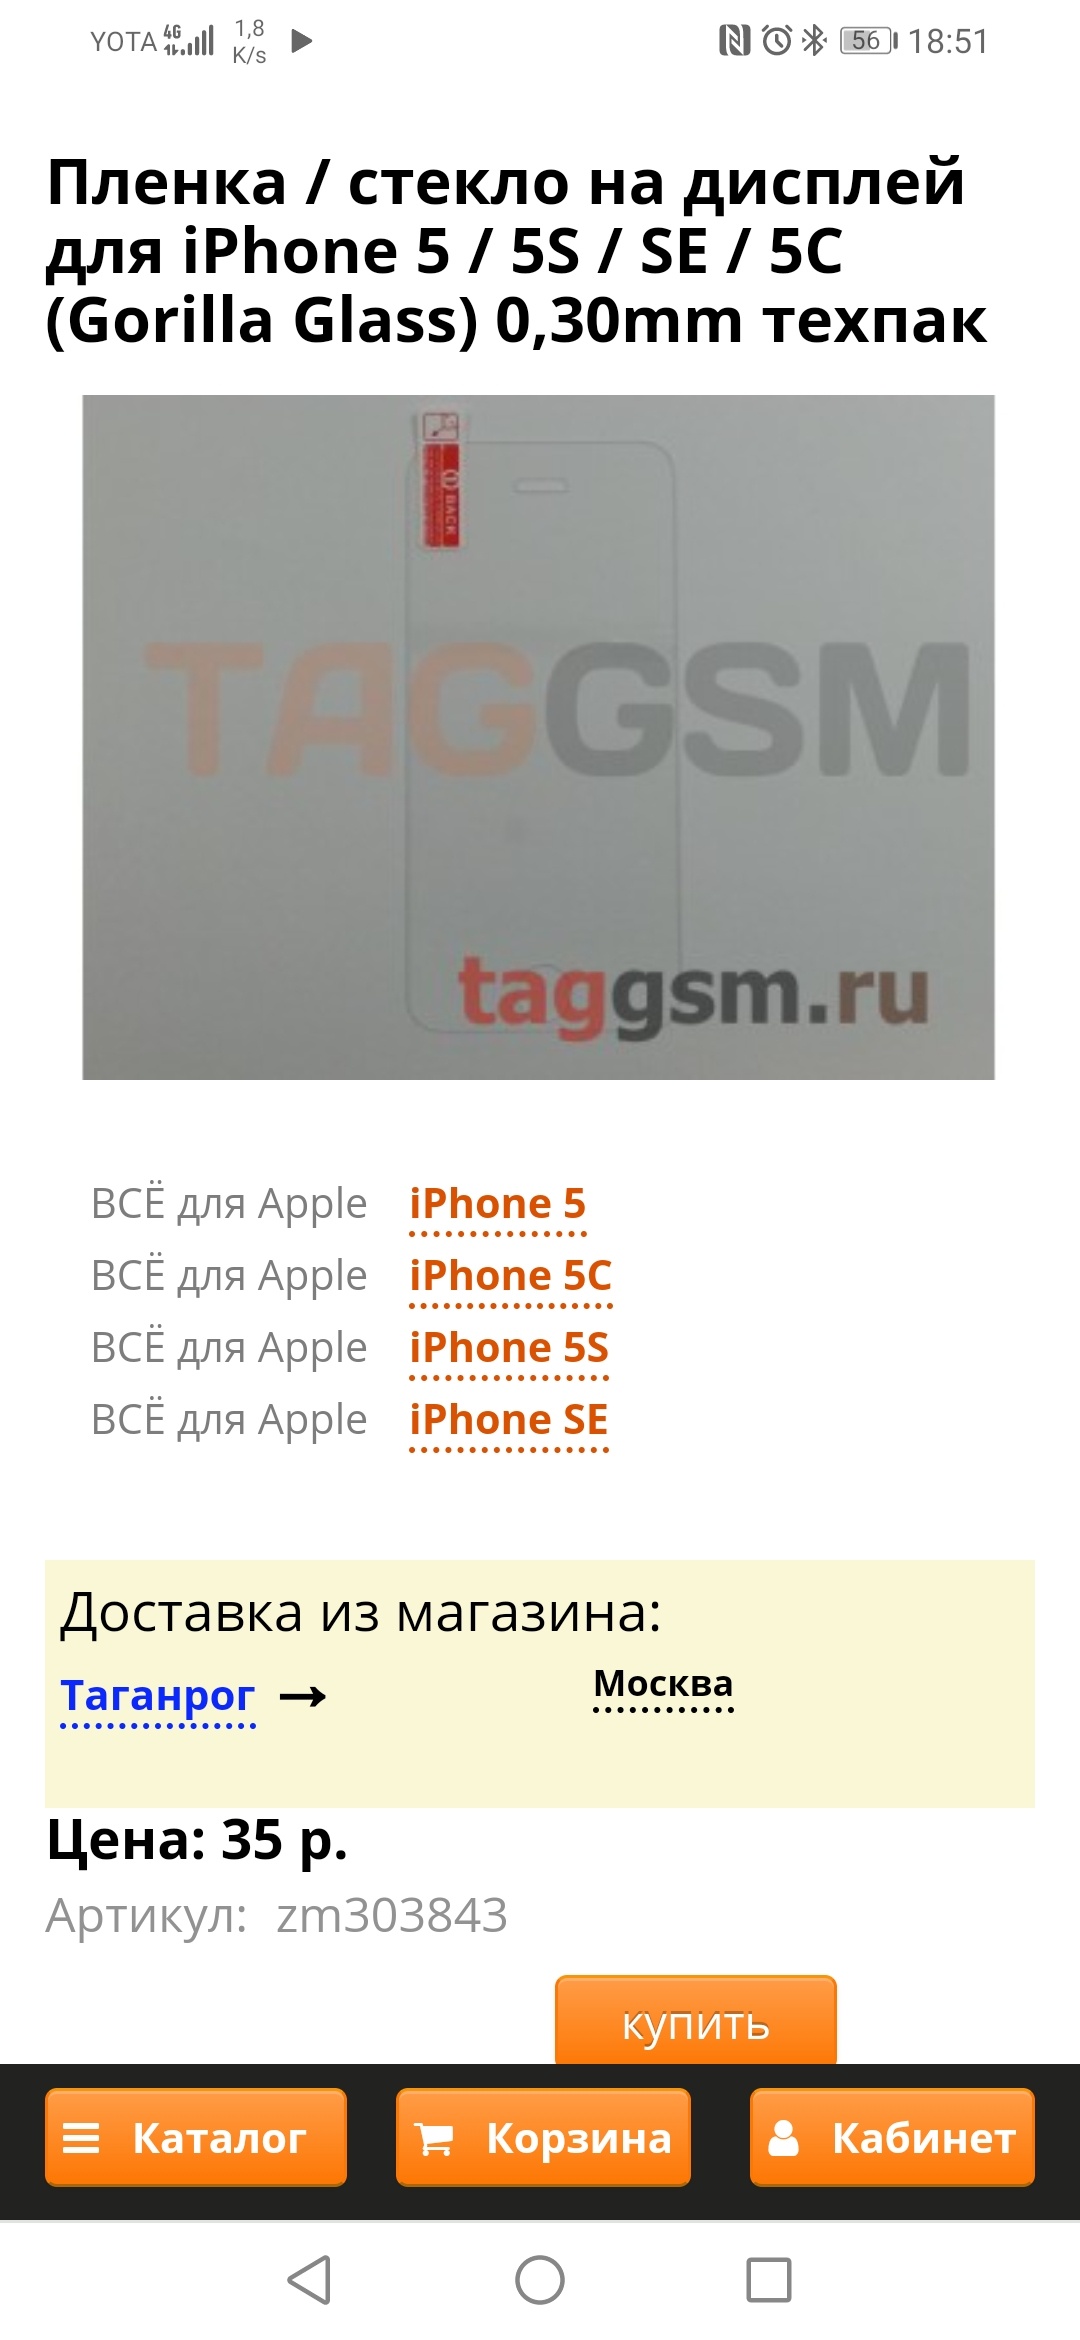 Лавка Gsm Челябинск Интернет Магазин Каталог